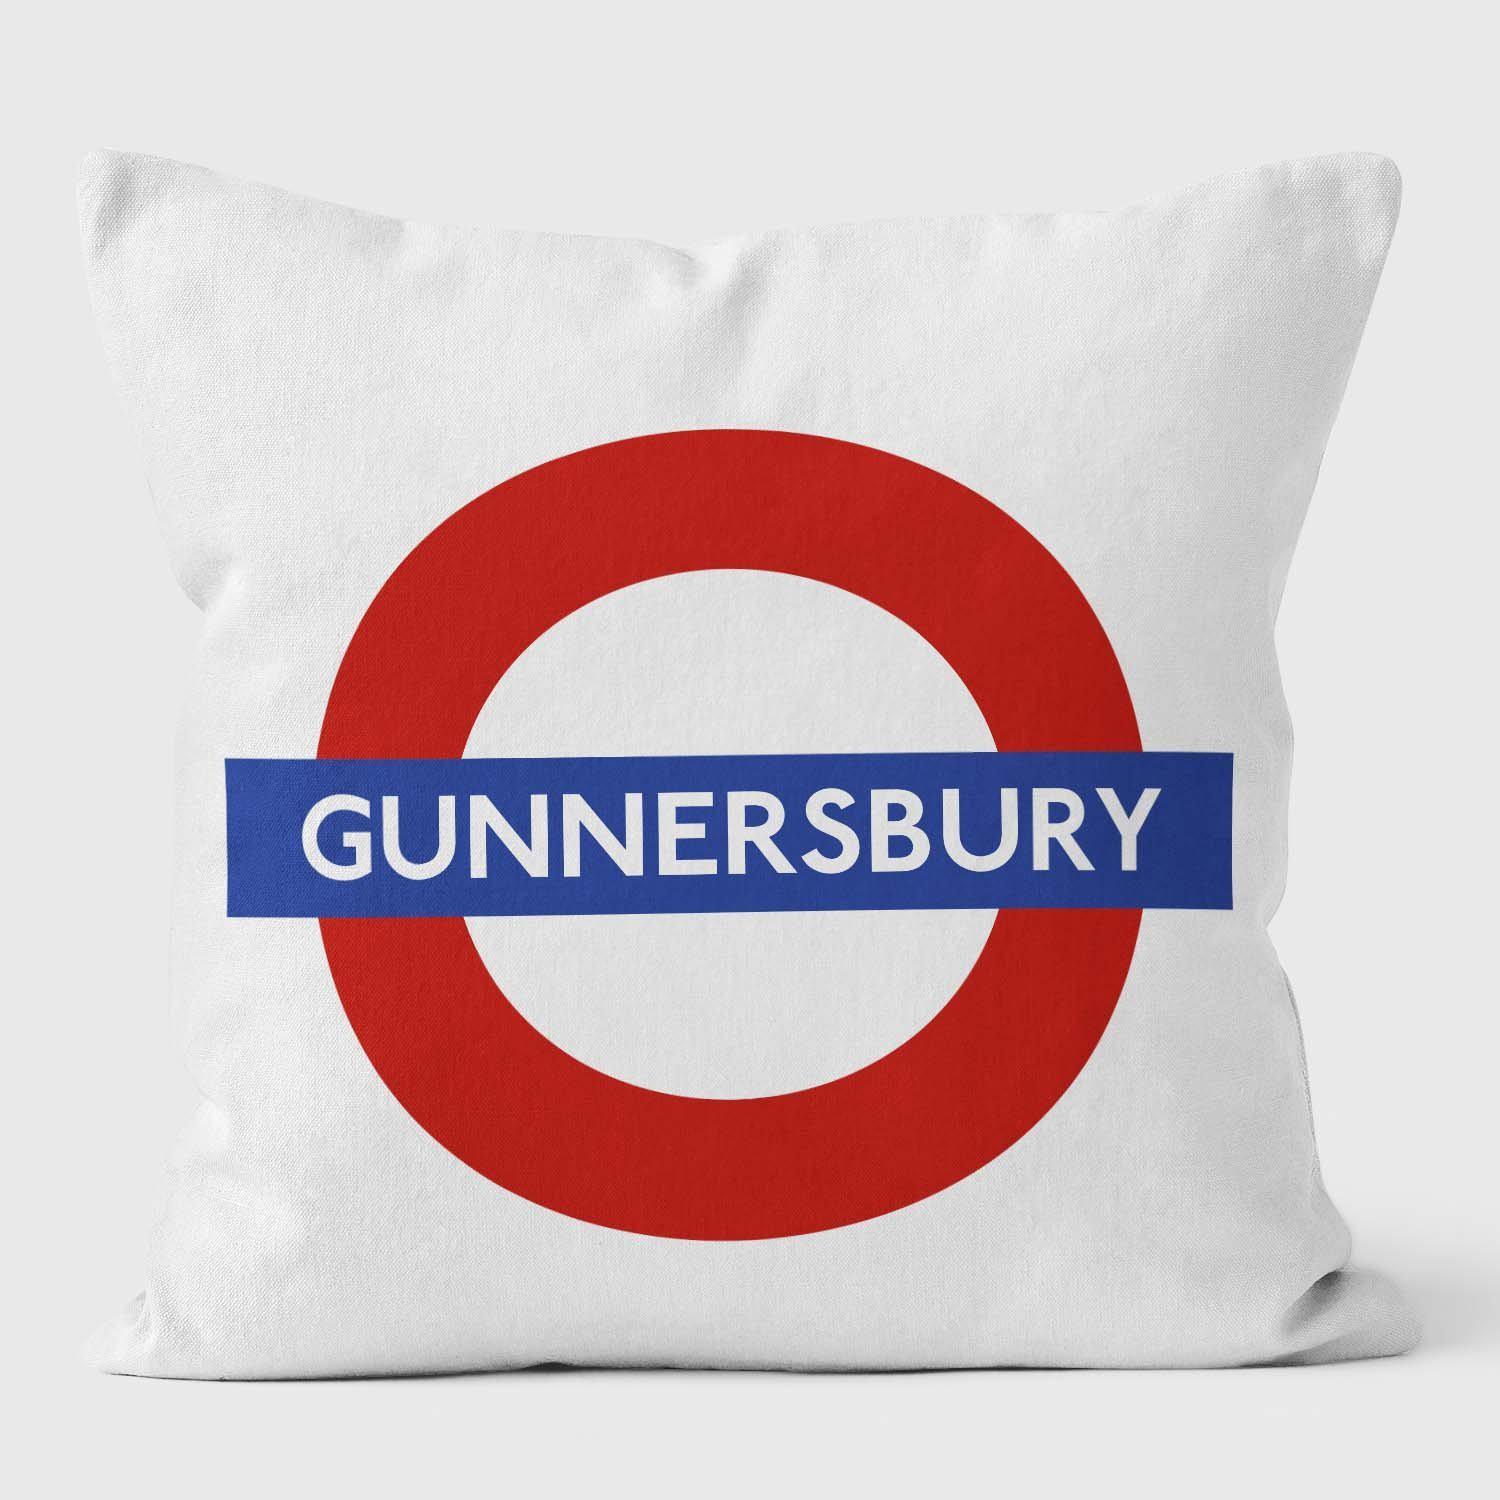 Gunnersbury London Underground Tube Station Roundel Cushion - Handmade Cushions UK - WeLoveCushions